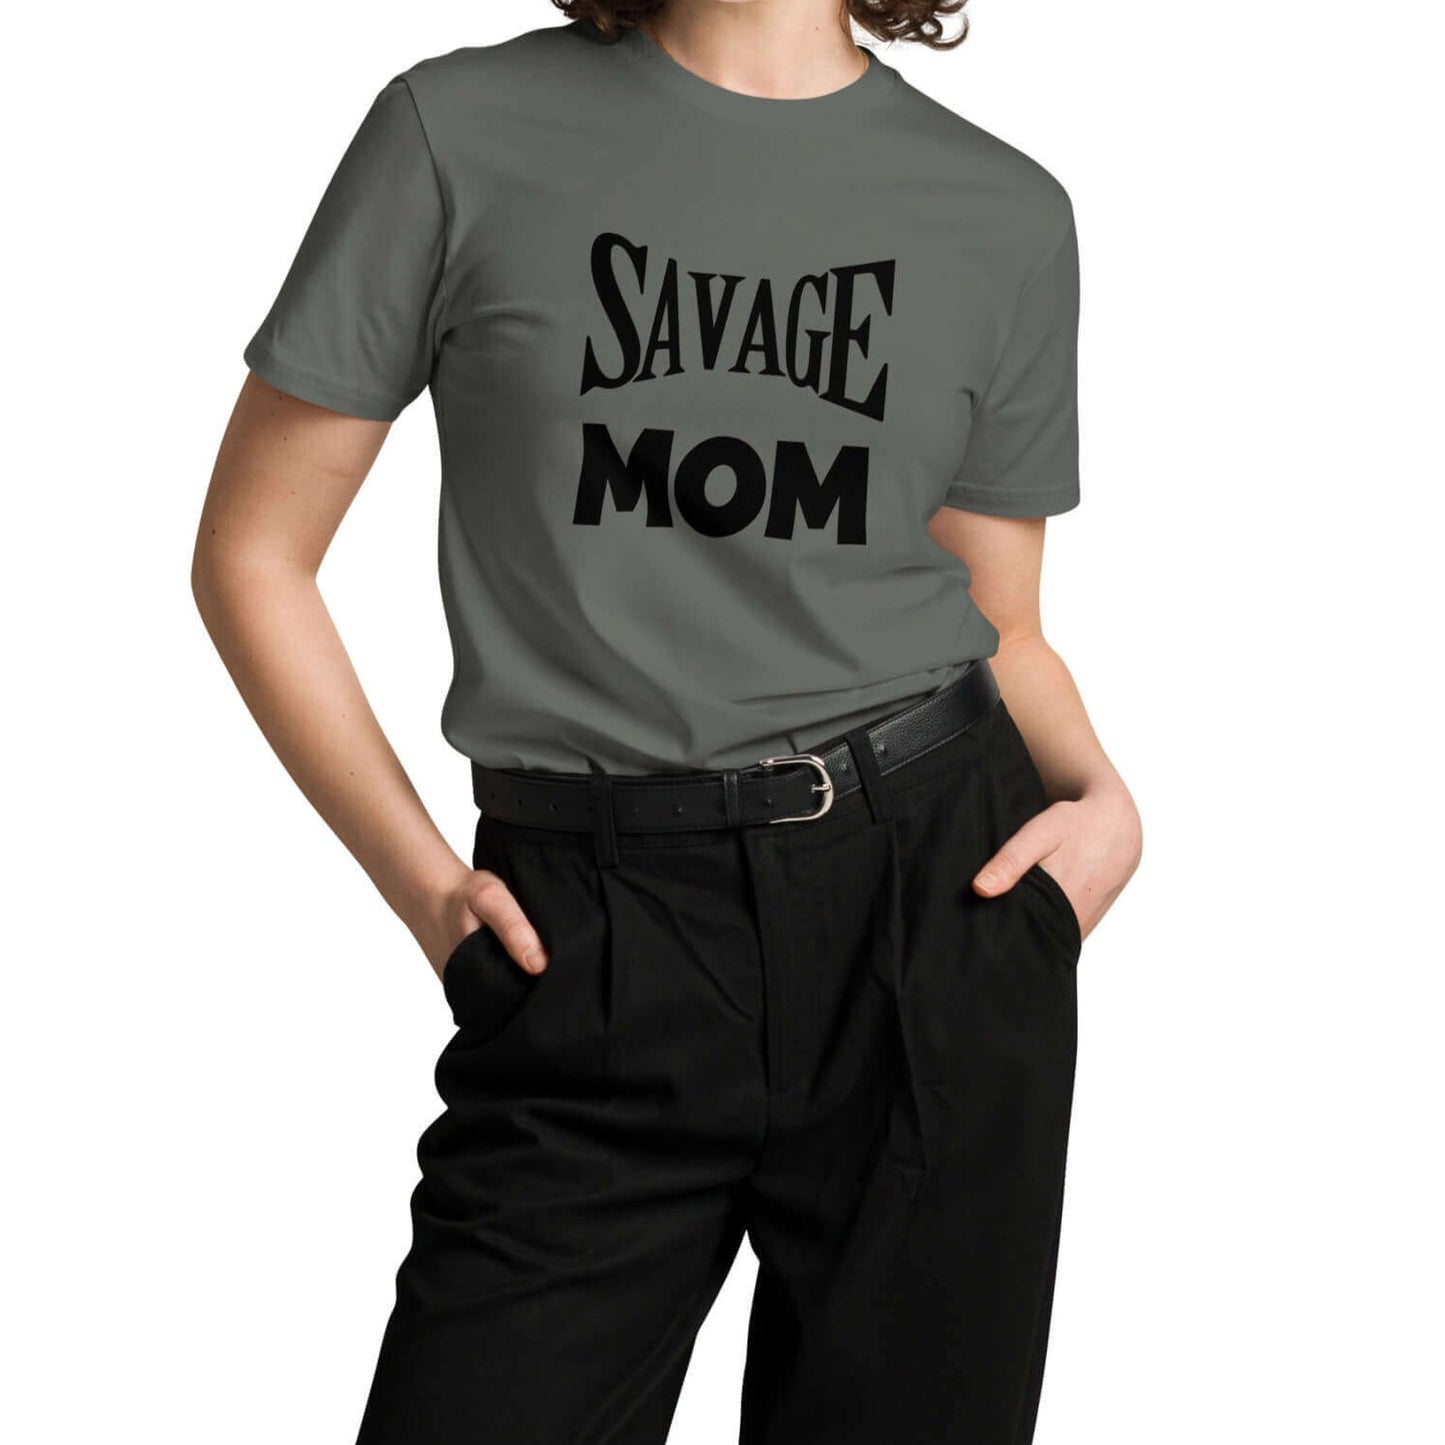 One-of-a kind mom shirts, mama shirt, custom t-shirts